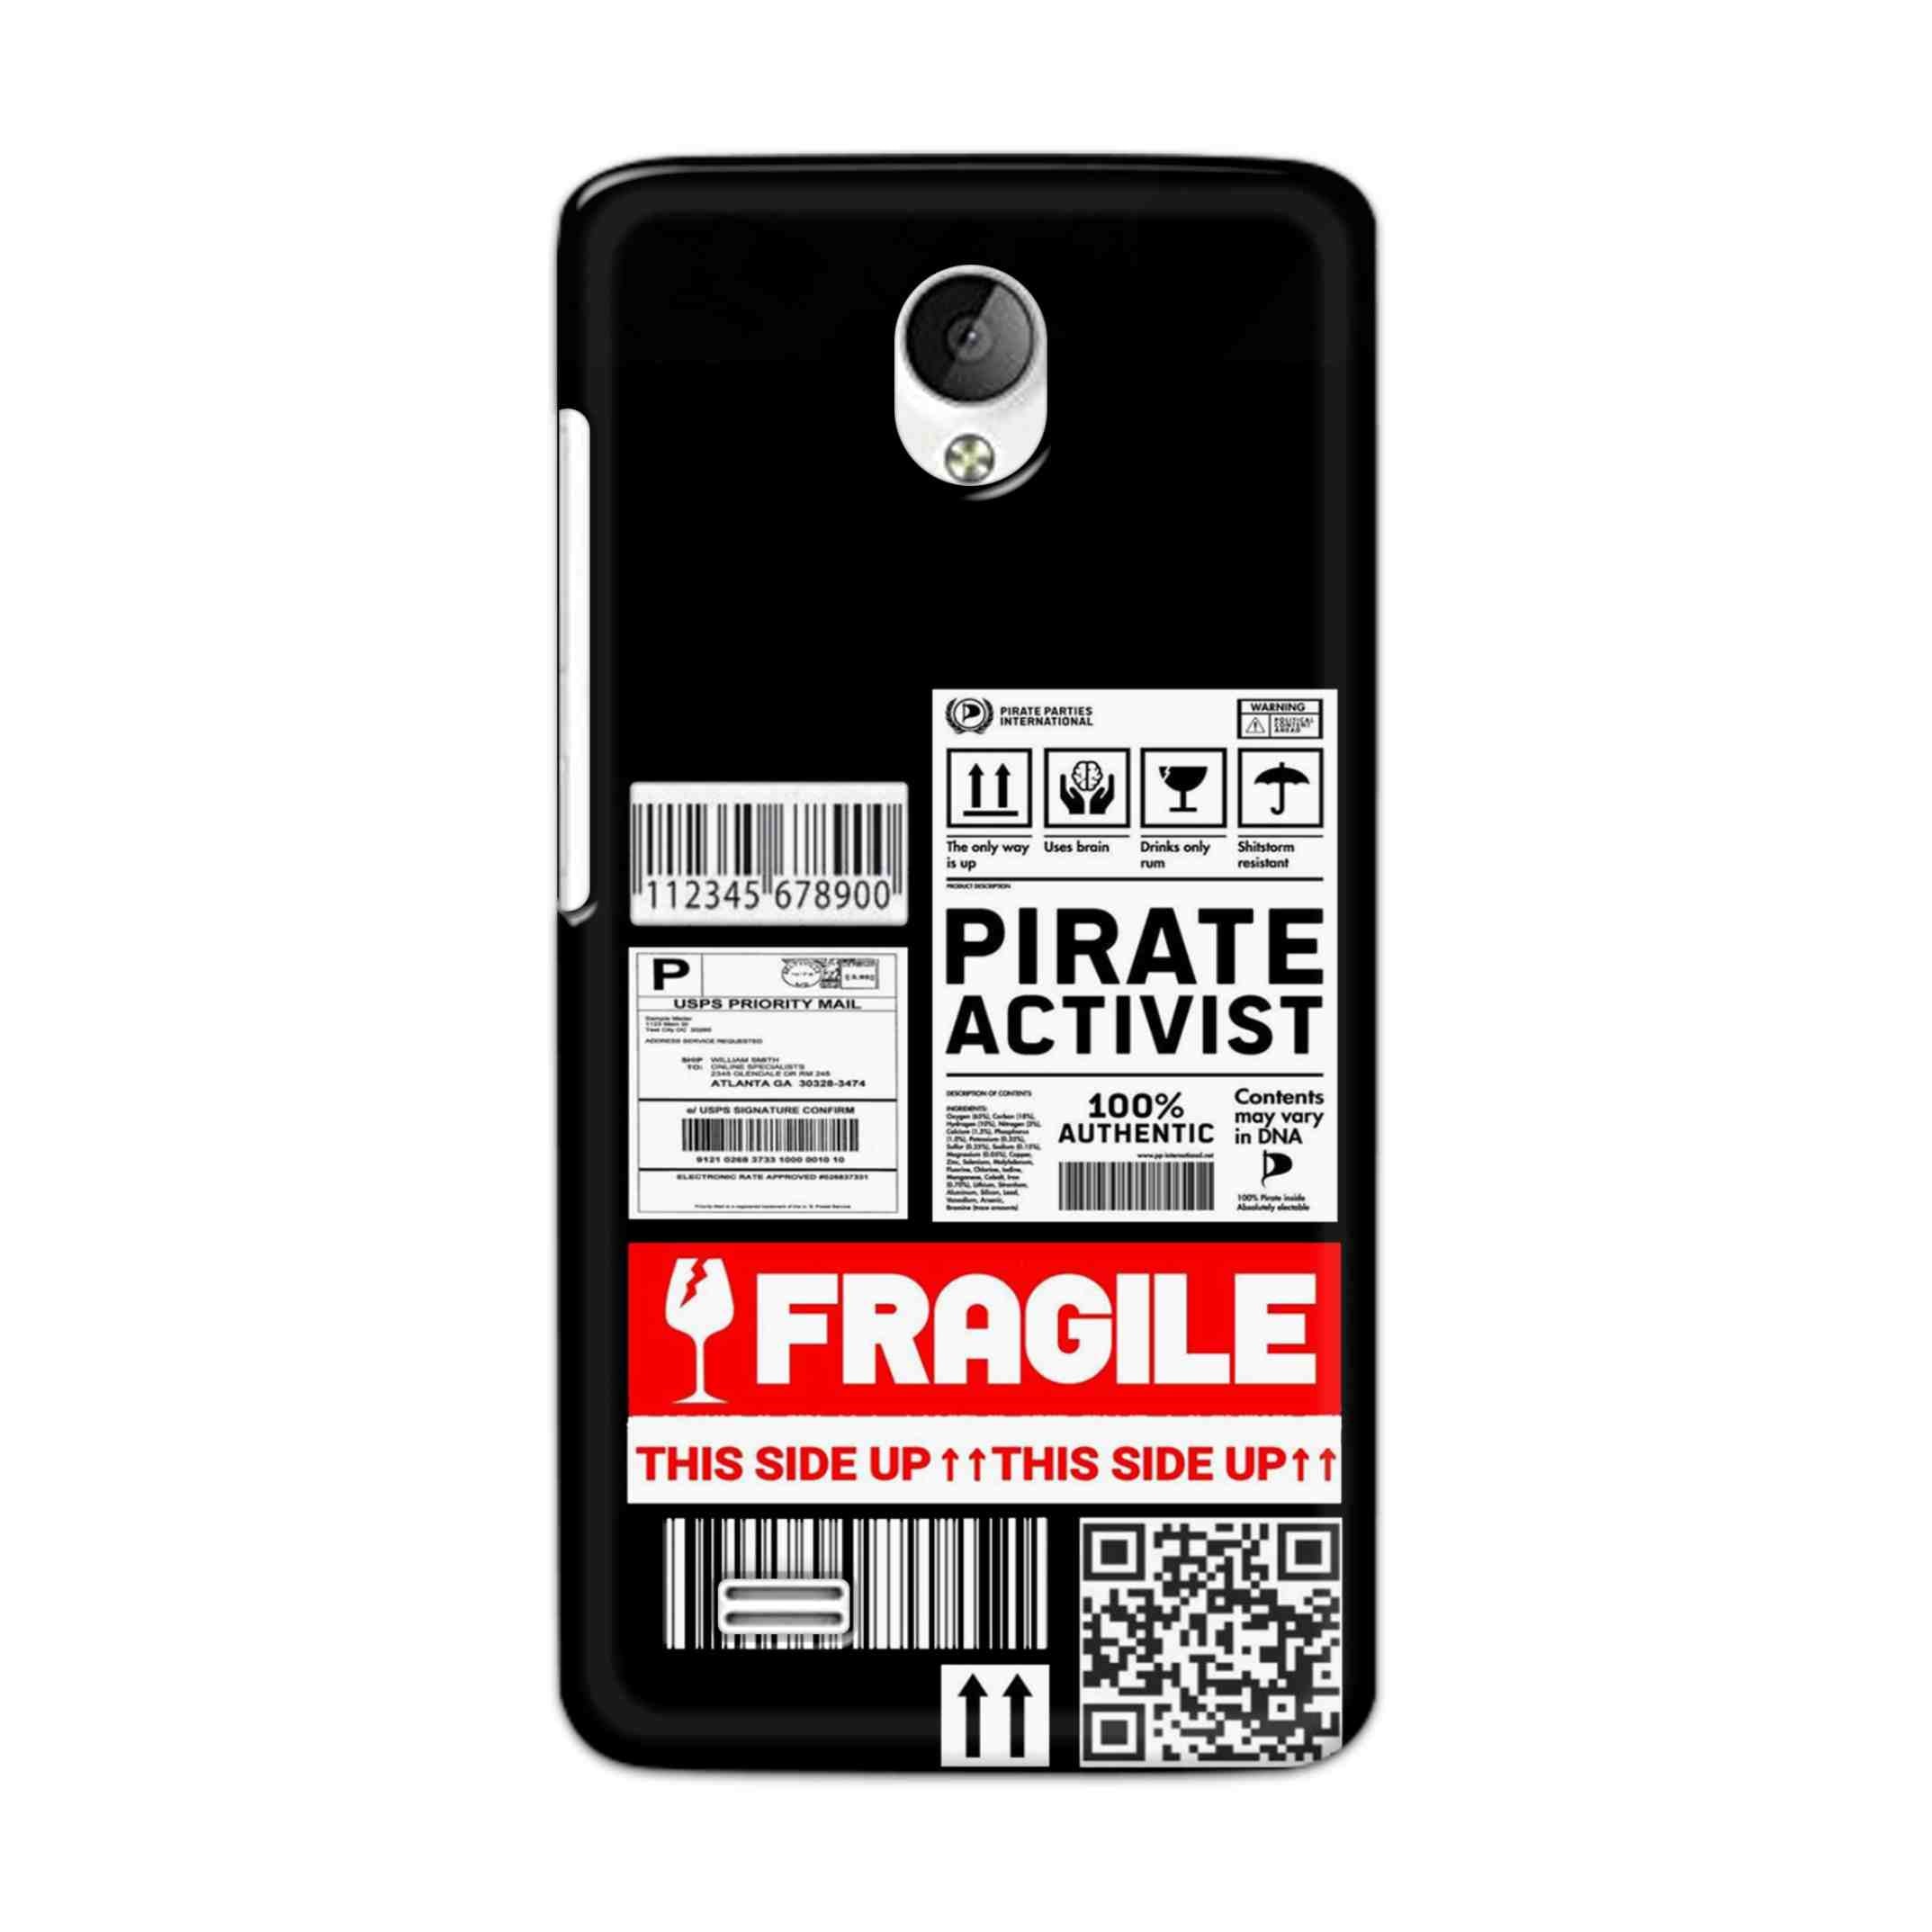 Buy Fragile Hard Back Mobile Phone Case Cover For Vivo Y21 / Vivo Y21L Online